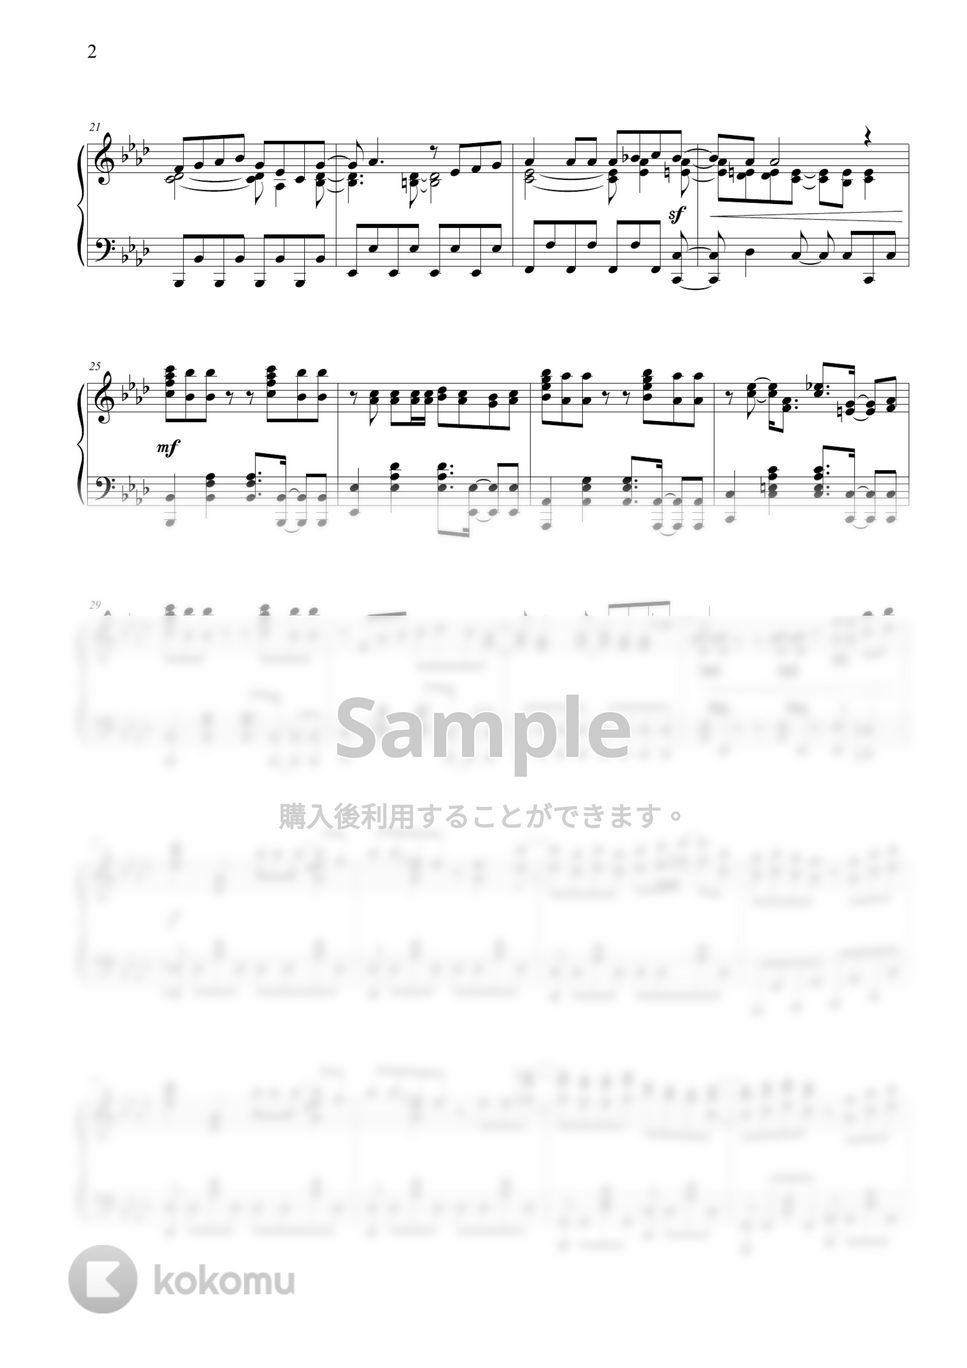 緑黄色社会 - Mela! by THIS IS PIANO